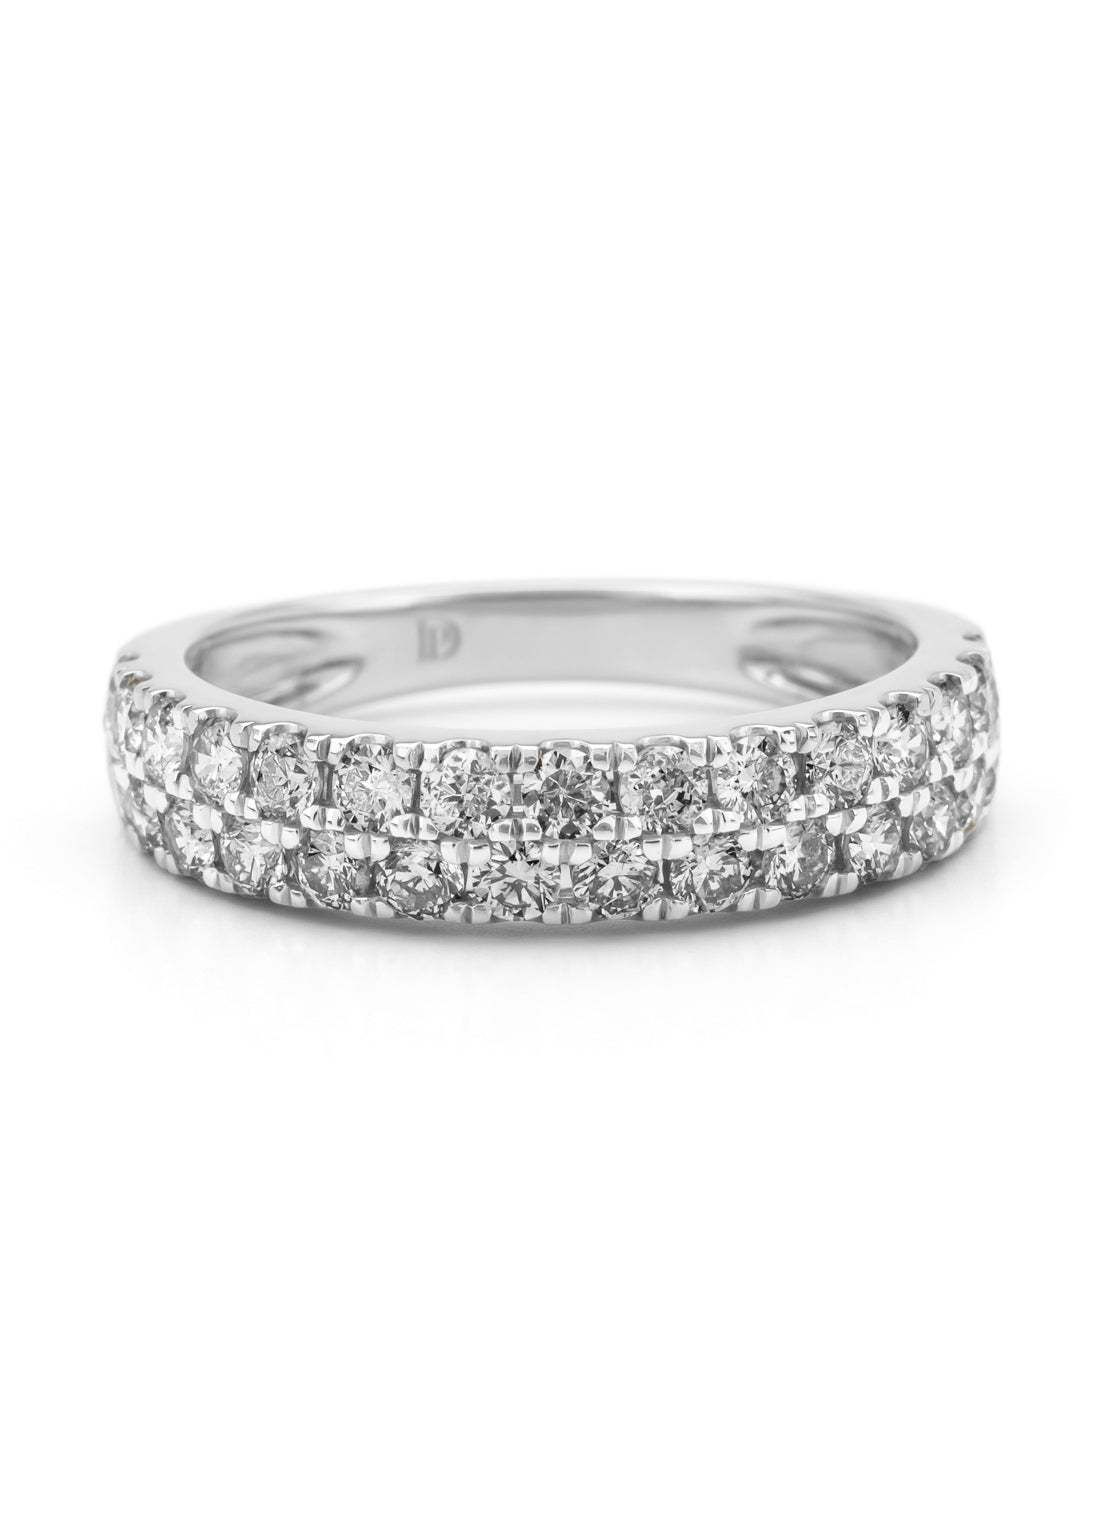 White gold ring, 0.95 ct diamond, ensemble